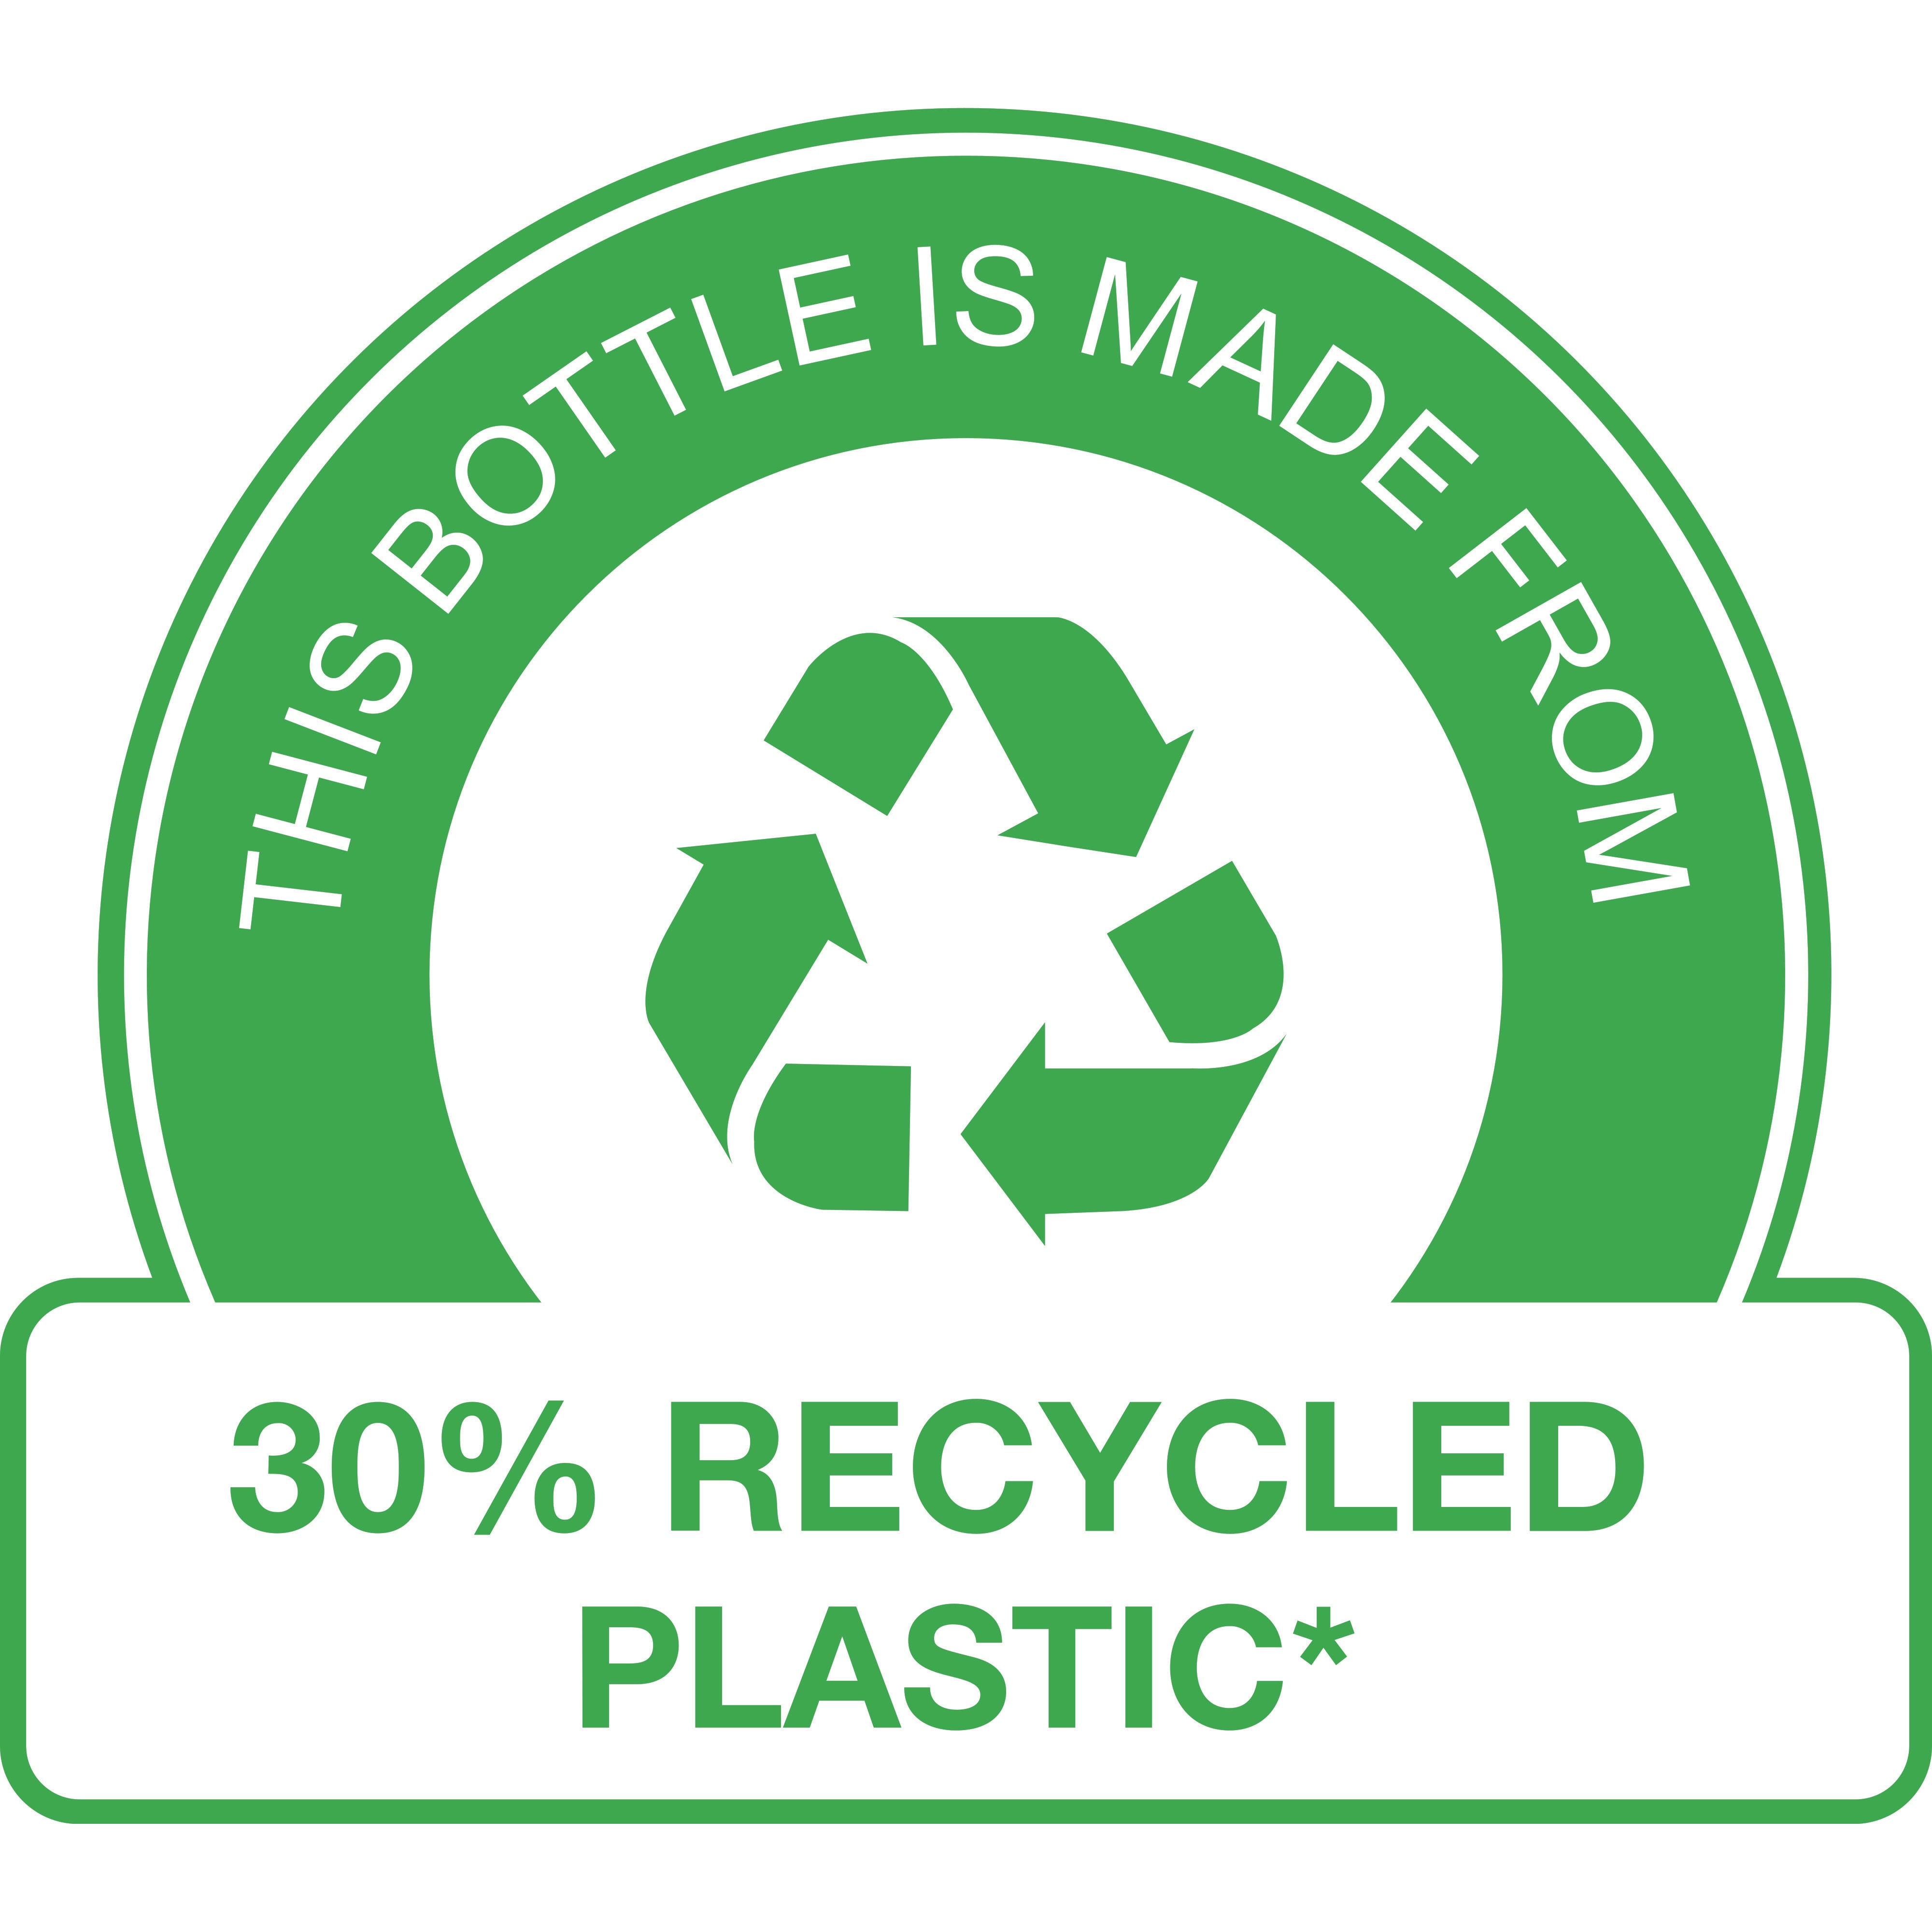 Flasken er laget av minst 30 % resirkulert plast.* 

(*Gjelder ikke pumpen.)